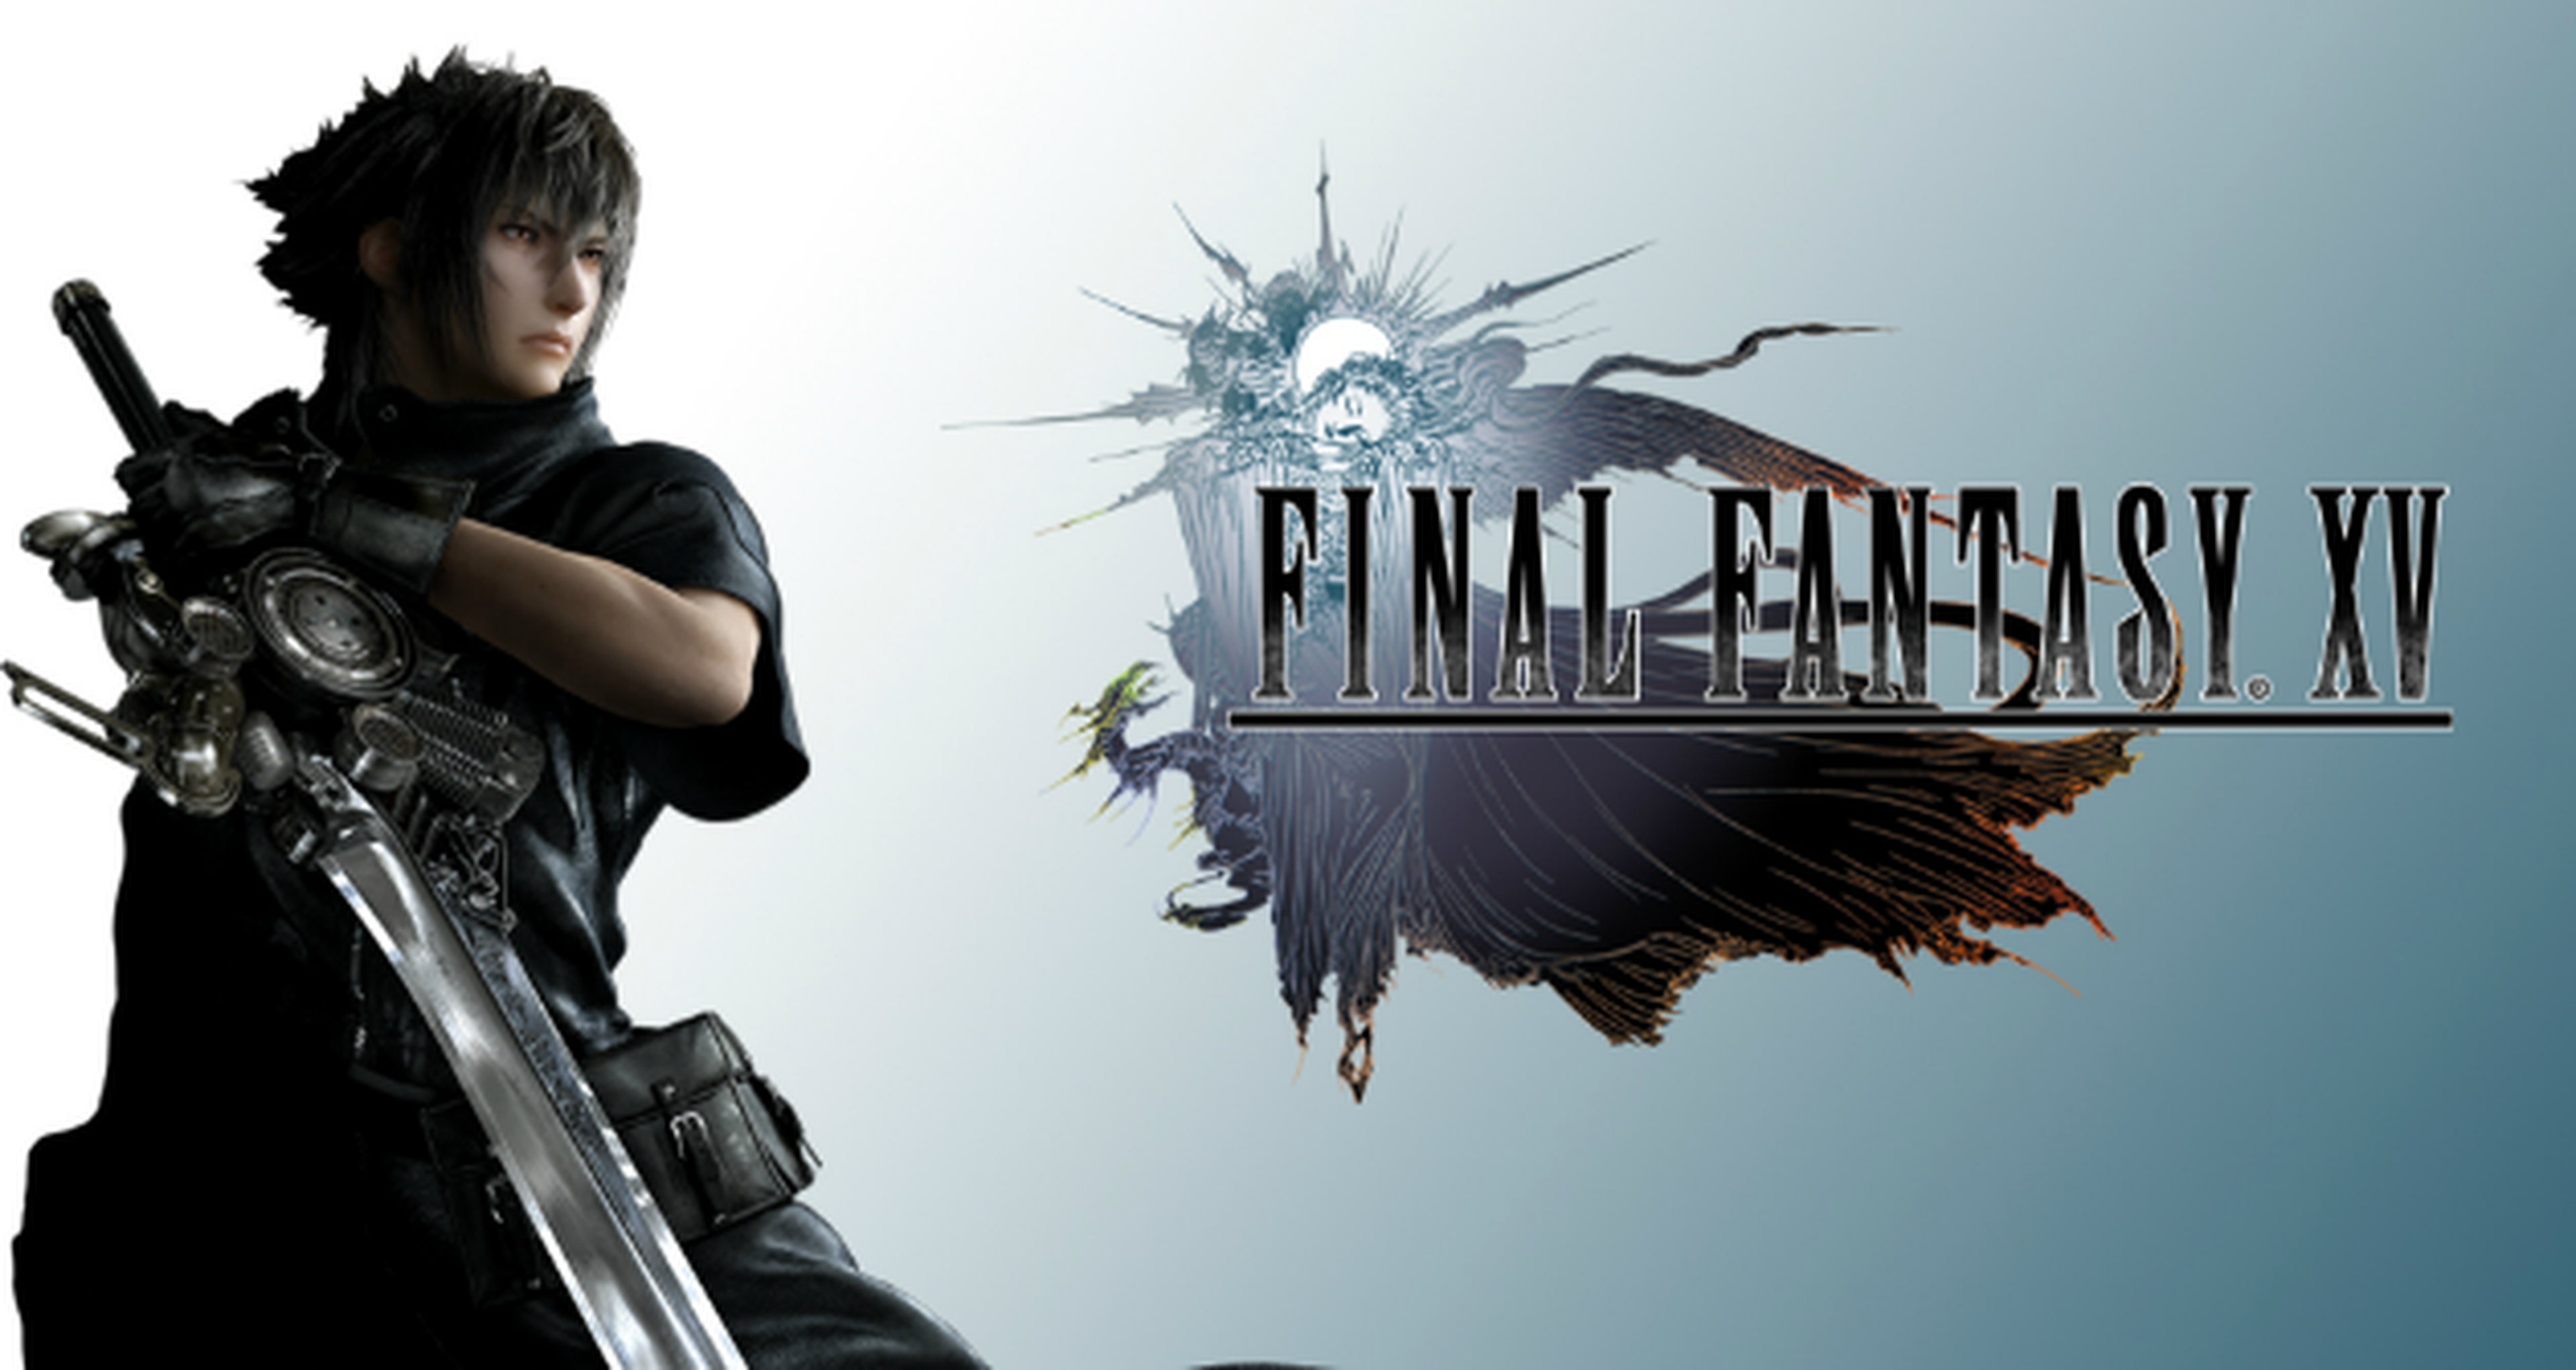 Final Fantasy XV: Avalanche Studios colabora con Square Enix en el desarrollo del juego